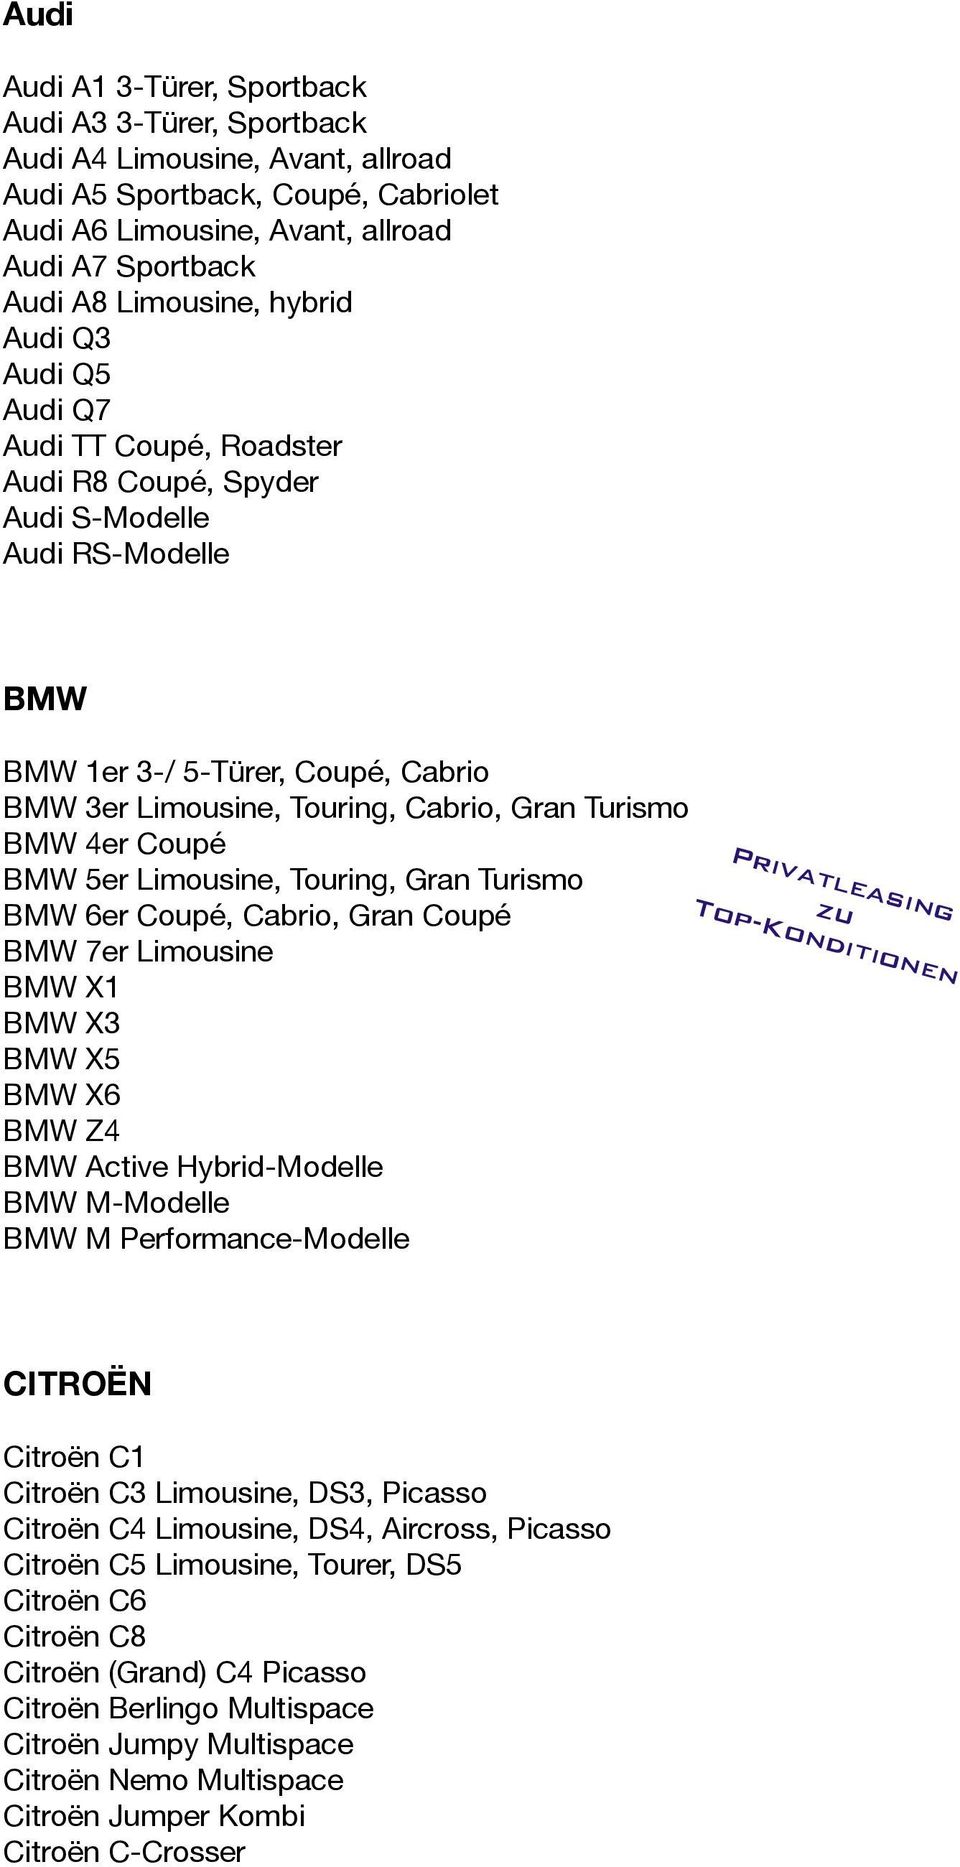 4er Coupé BMW 5er Limousine, Touring, Gran Turismo BMW 6er Coupé, Cabrio, Gran Coupé BMW 7er Limousine BMW X1 BMW X3 BMW X5 BMW X6 BMW Z4 BMW Active Hybrid-Modelle BMW M-Modelle BMW M